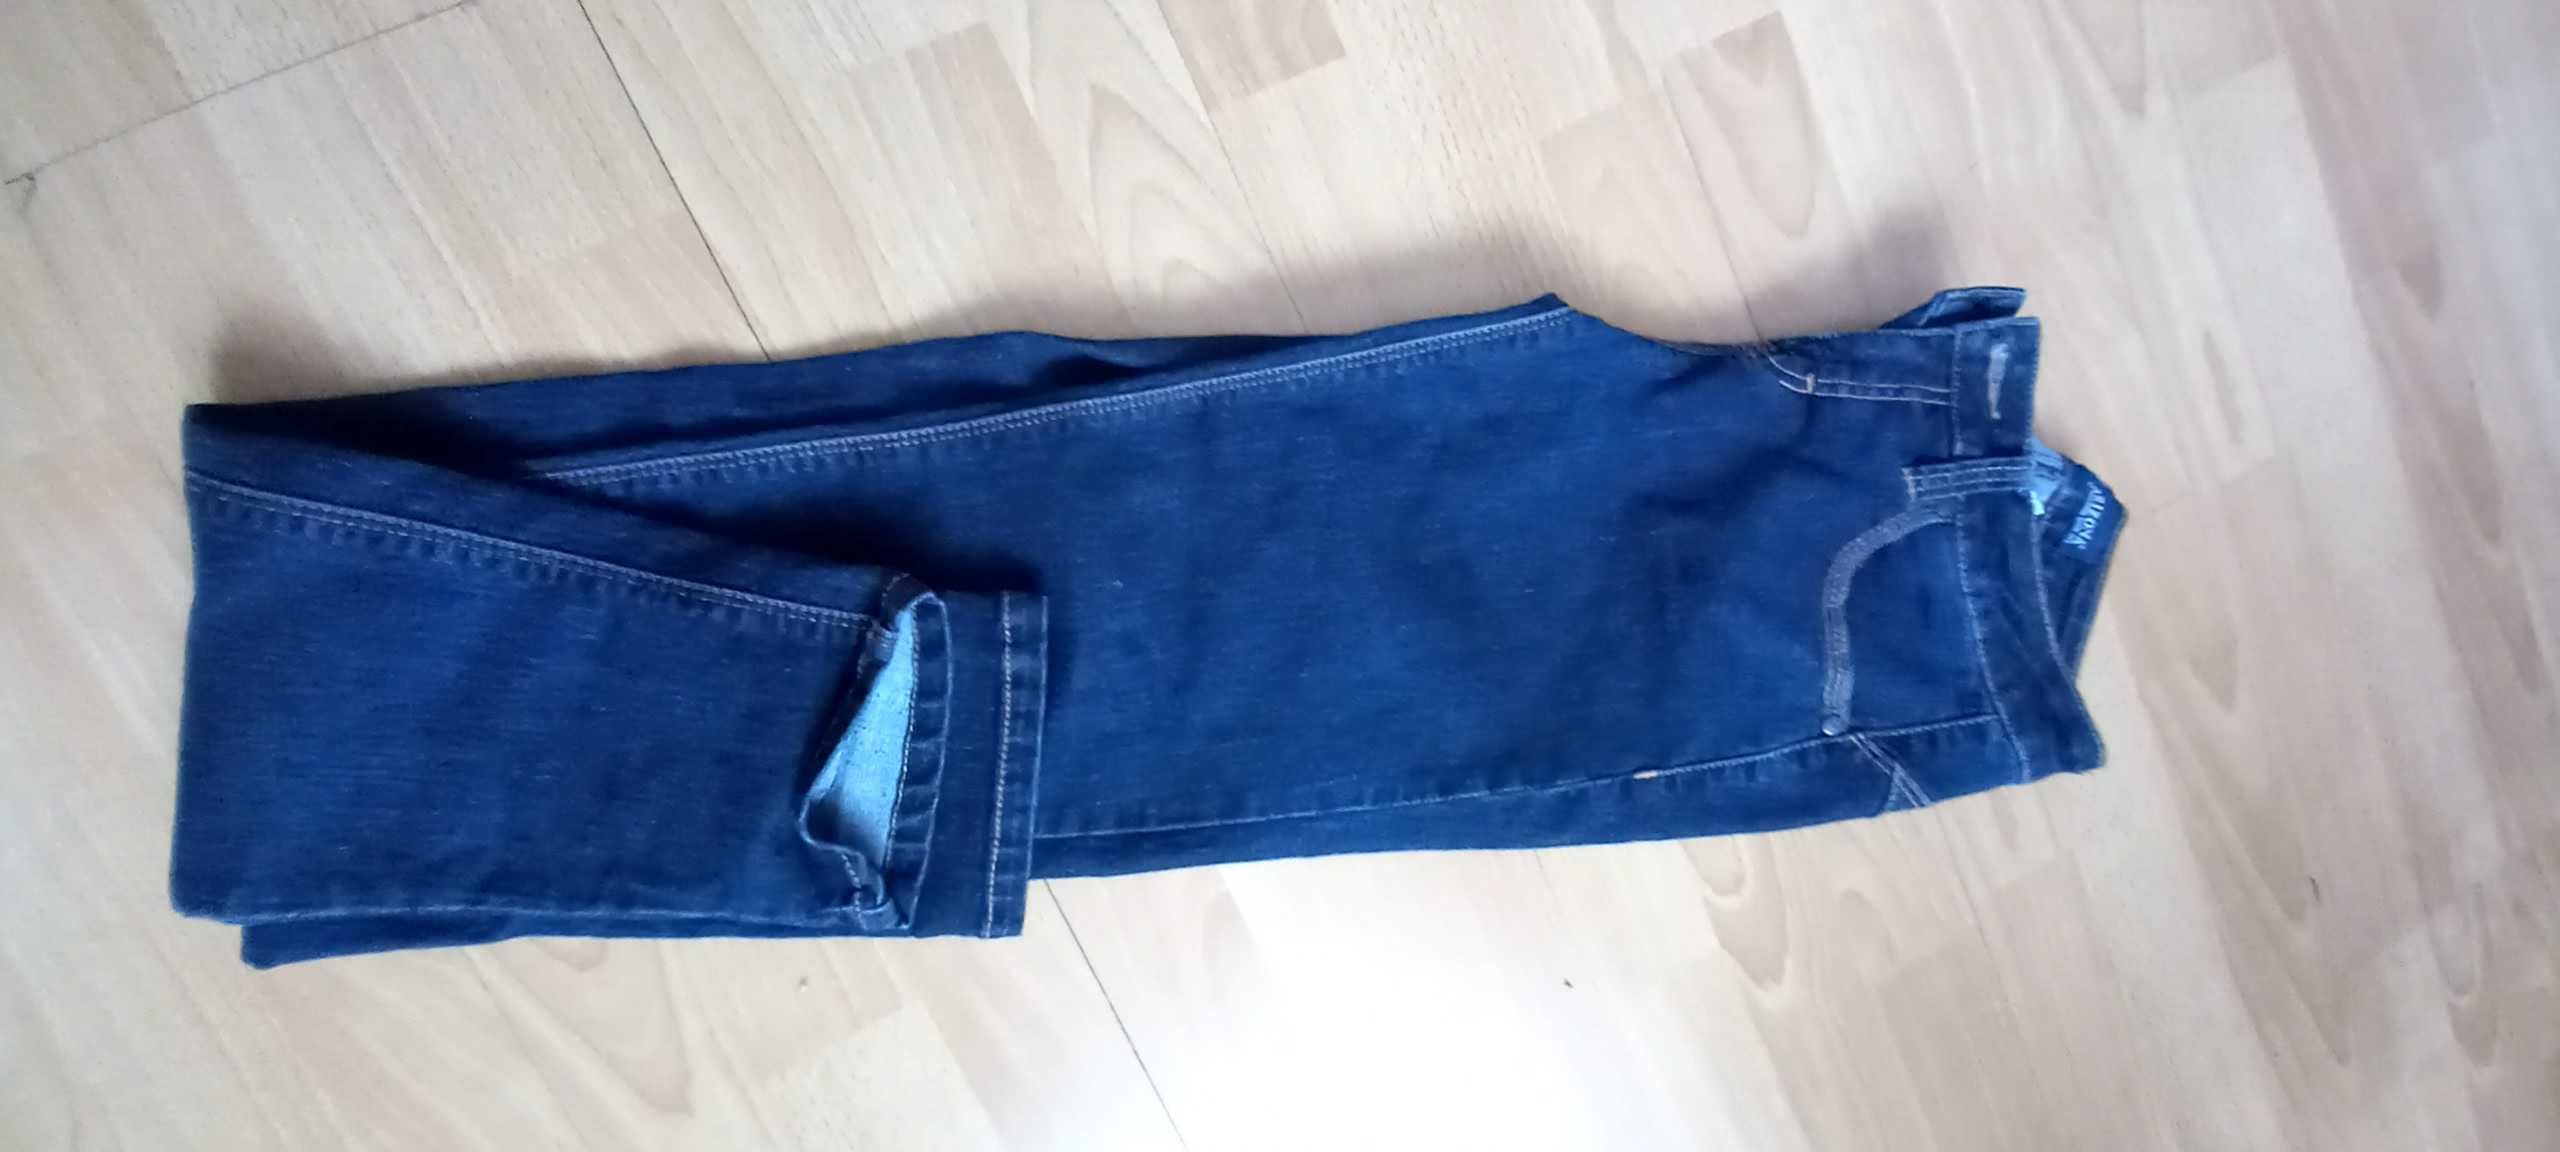 Zestaw ubrań jeansowych damskich rozmiar 34